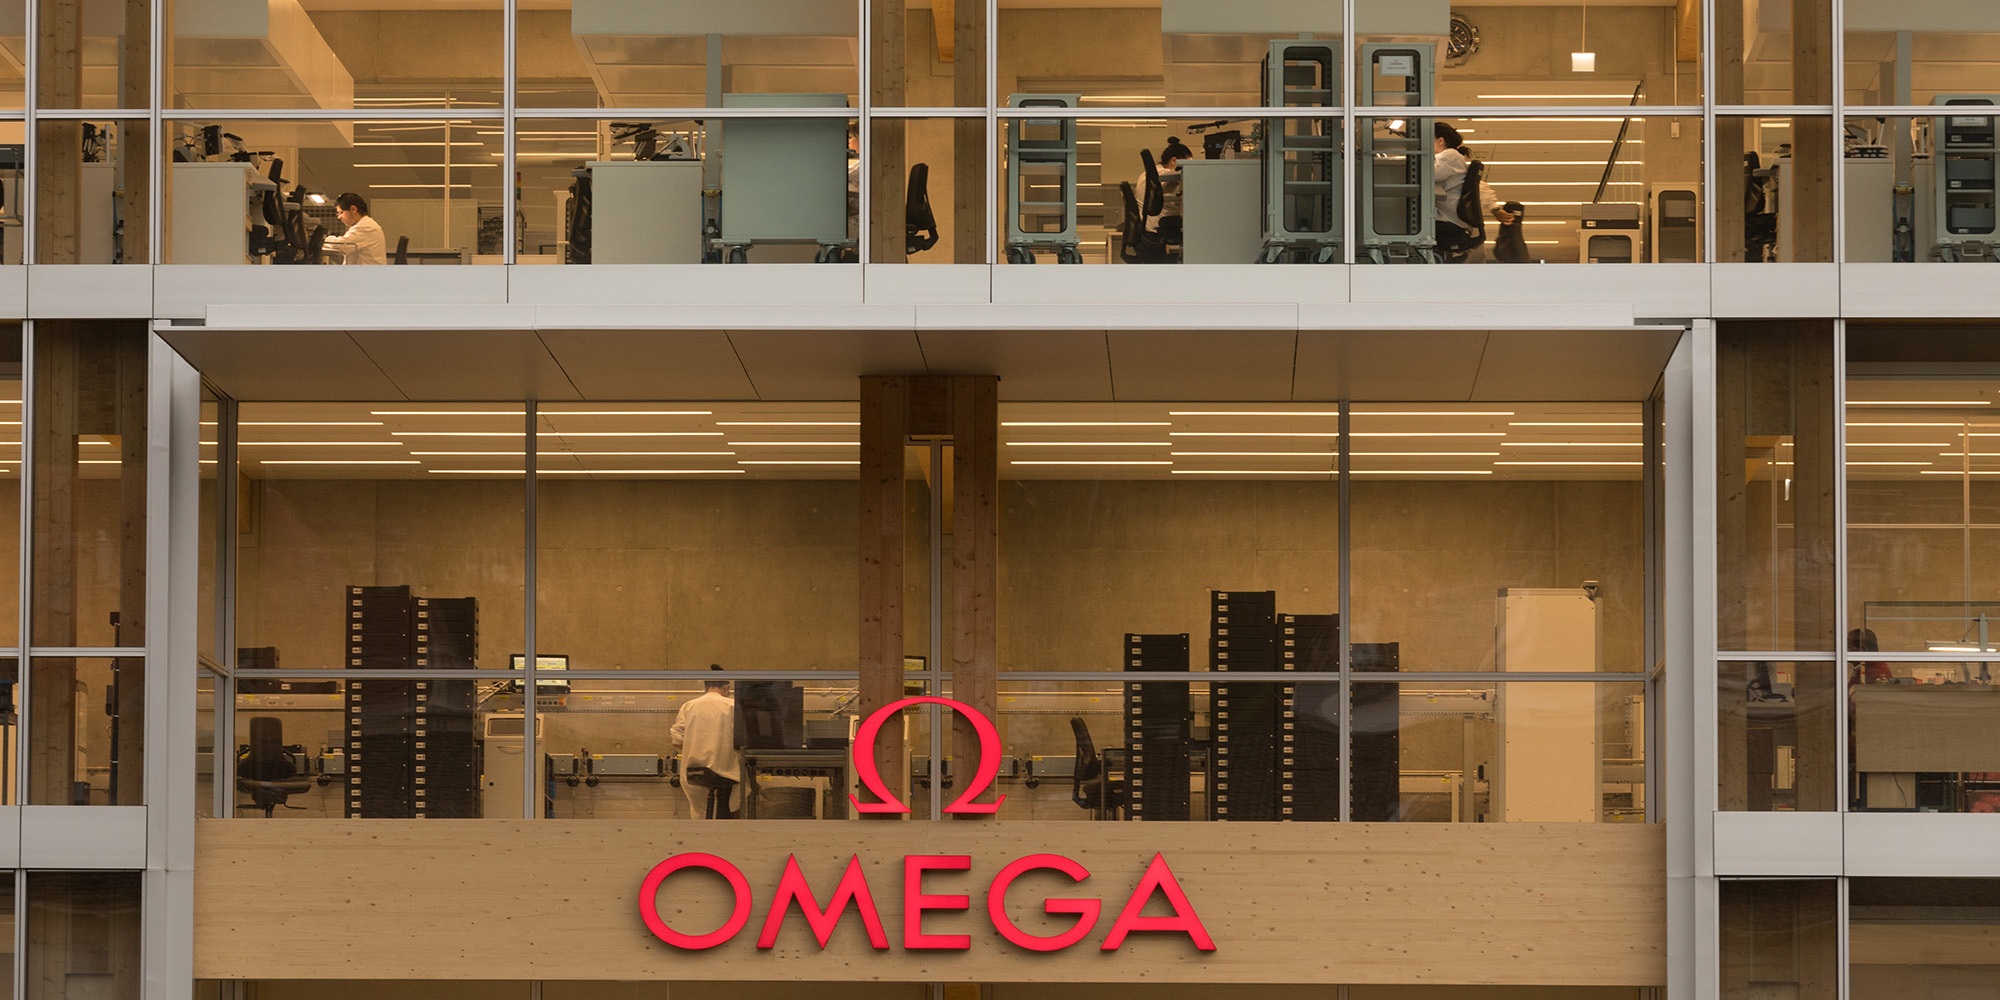 Grand lettrage Omega en rouge sur le nouvel immeuble de bureaux en bois avec façade en verre. En arrière-plan, on aperçoit les collaborateurs sur leur lieu de travail.